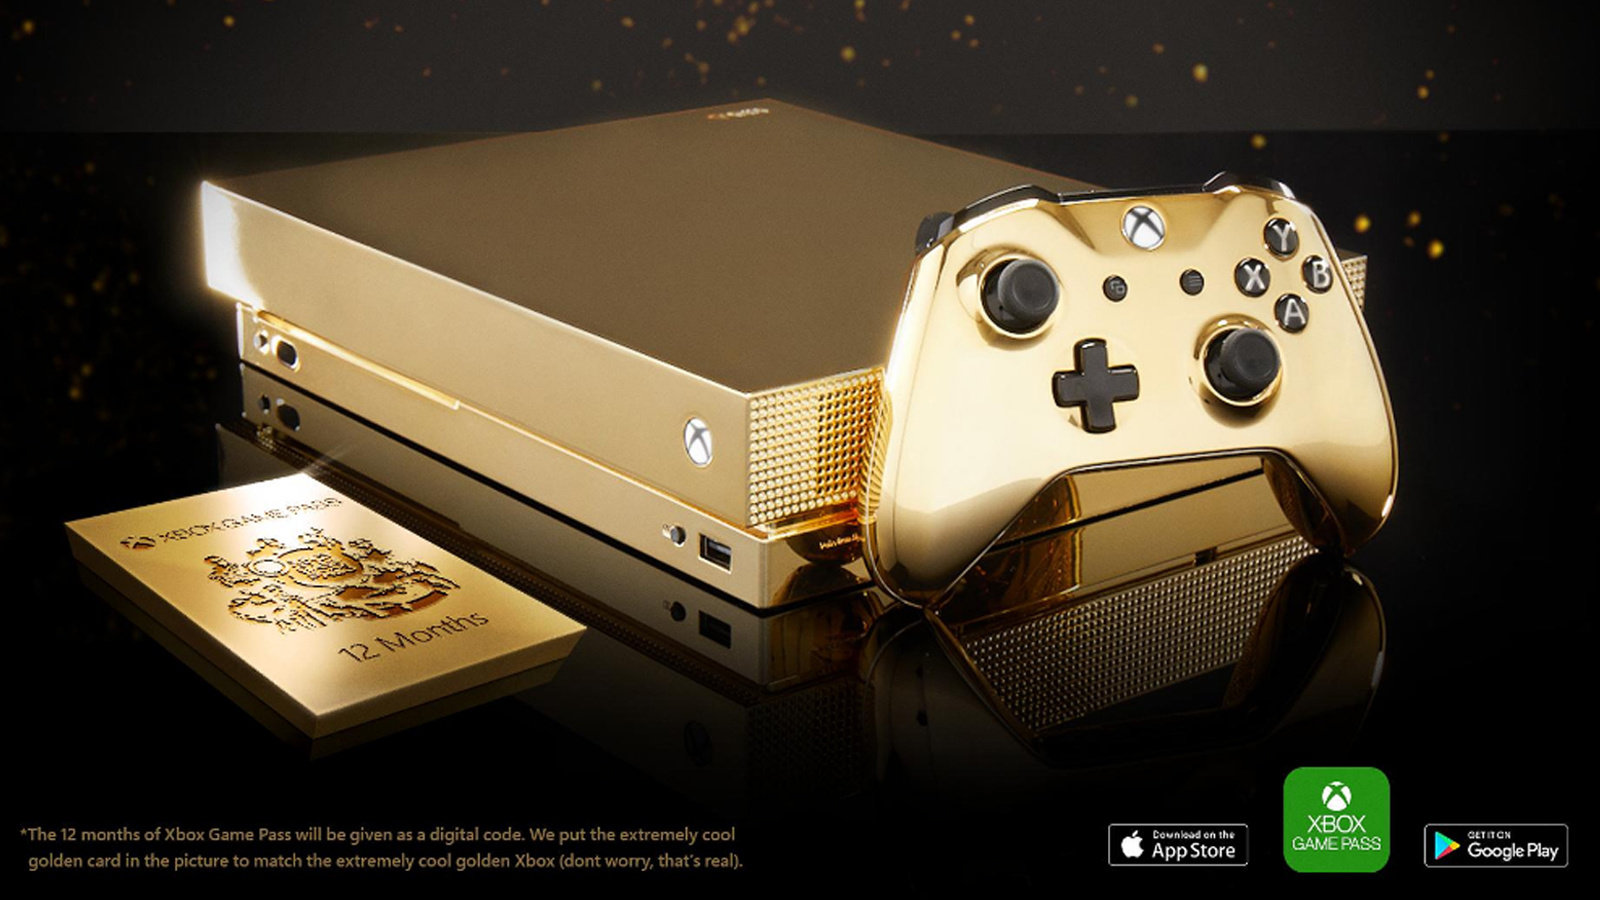 简单粗暴！为了推广APP，微软在推特上转发抽奖一台24K纯金的Xbox One X!